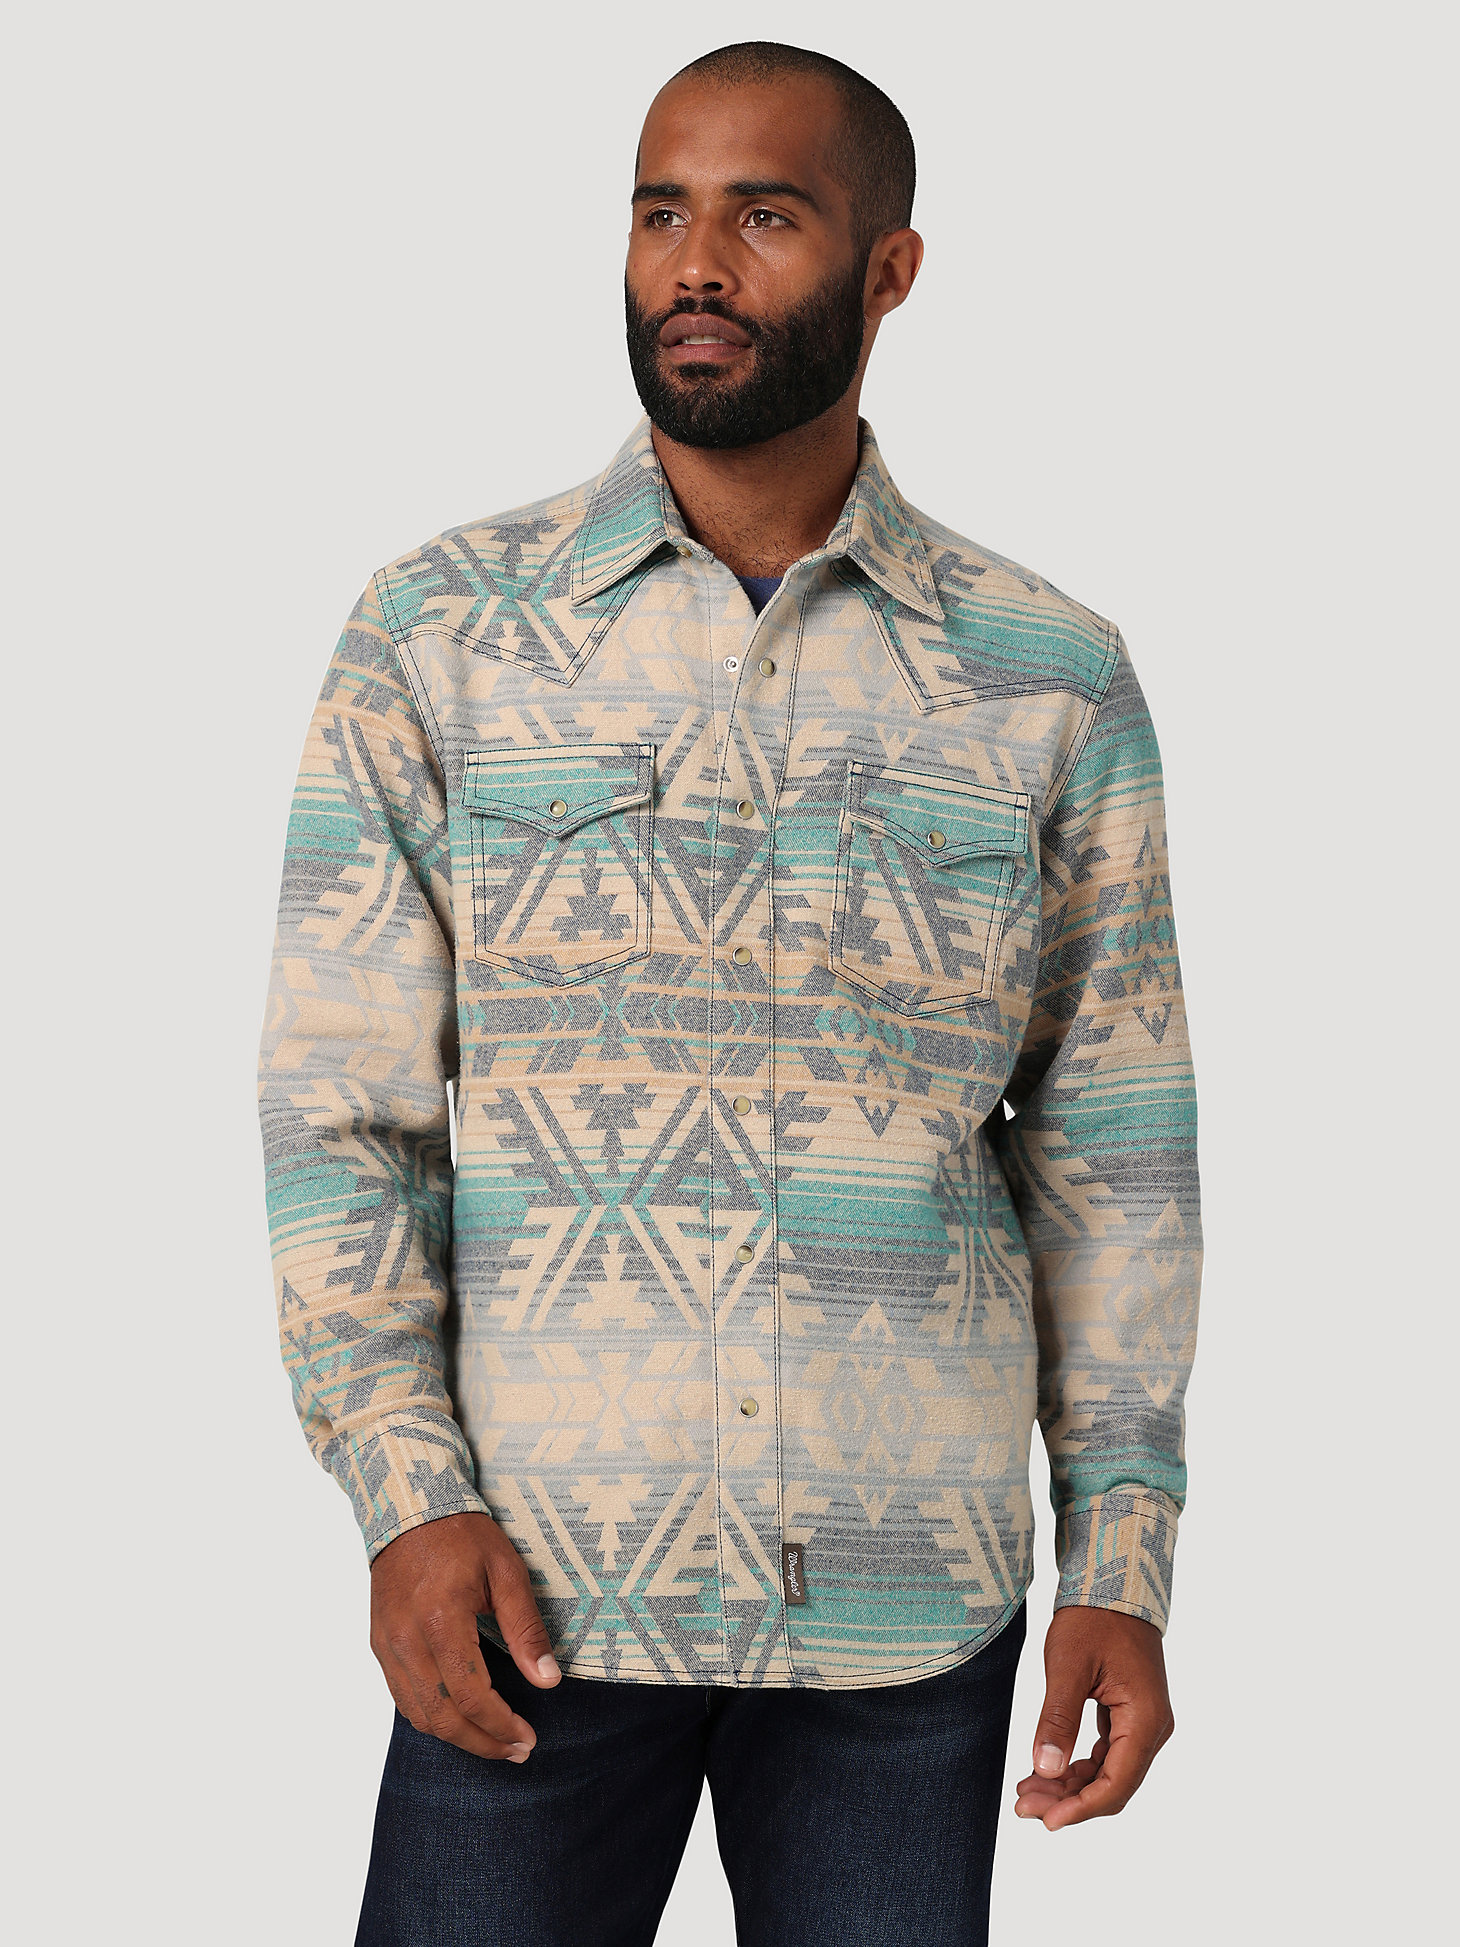 Men's Wrangler Retro® Premium Jacquard Snap Shirt Jacket in Deep Lake